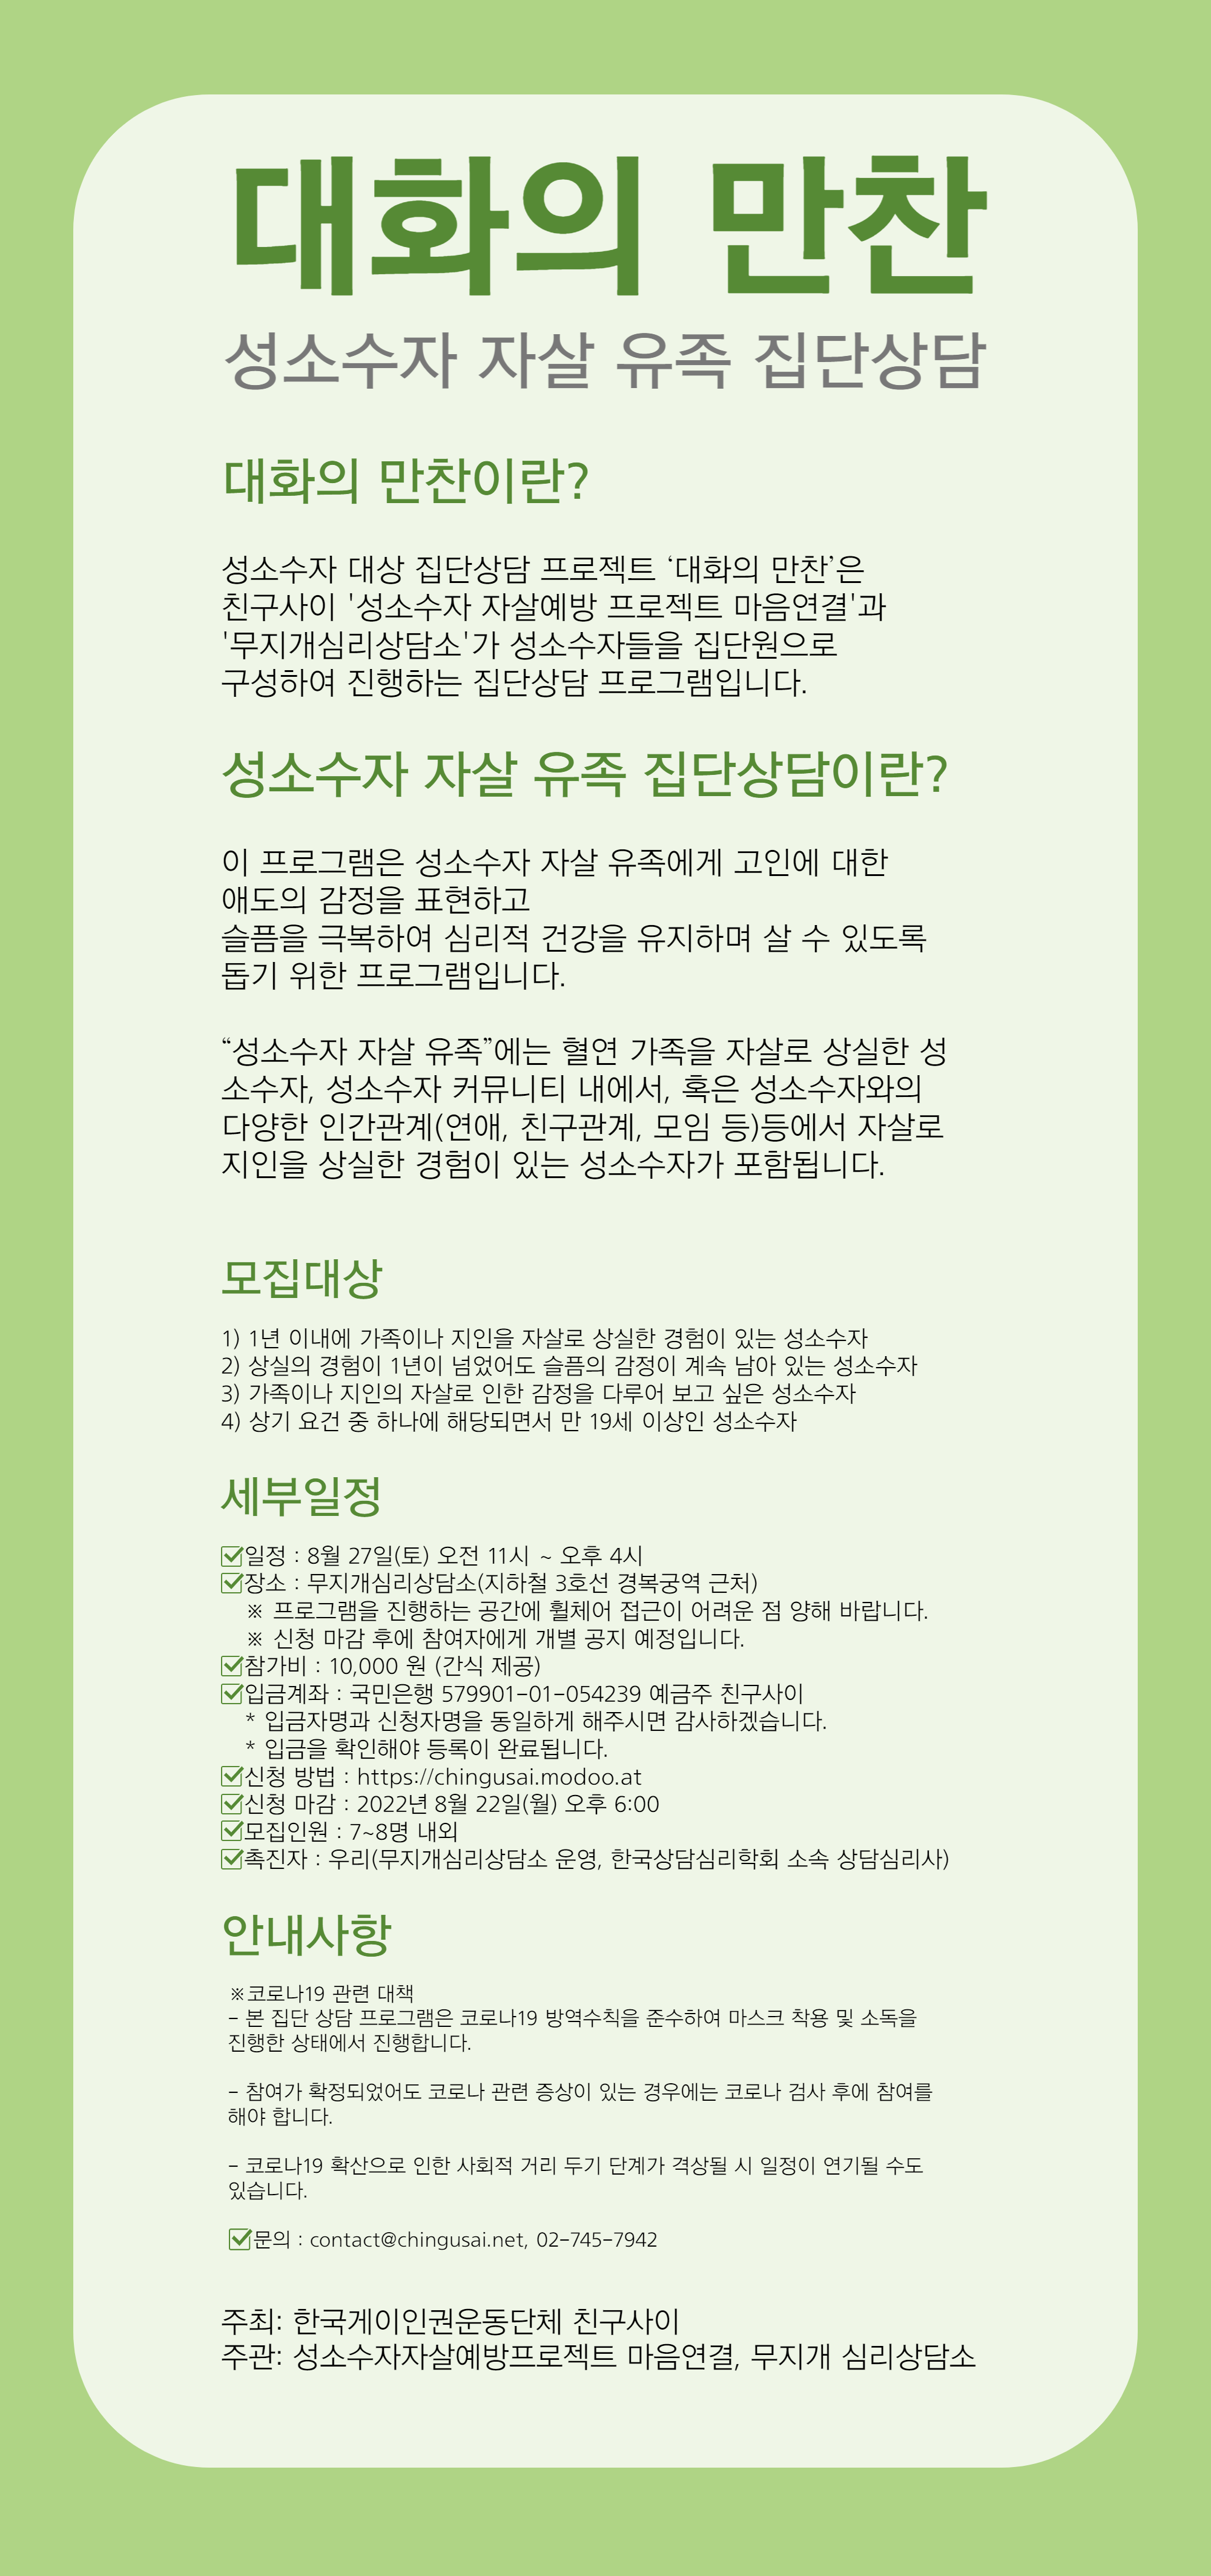 성소수자 자살 유족 집단상담 홍보 홈피-001 (2).png